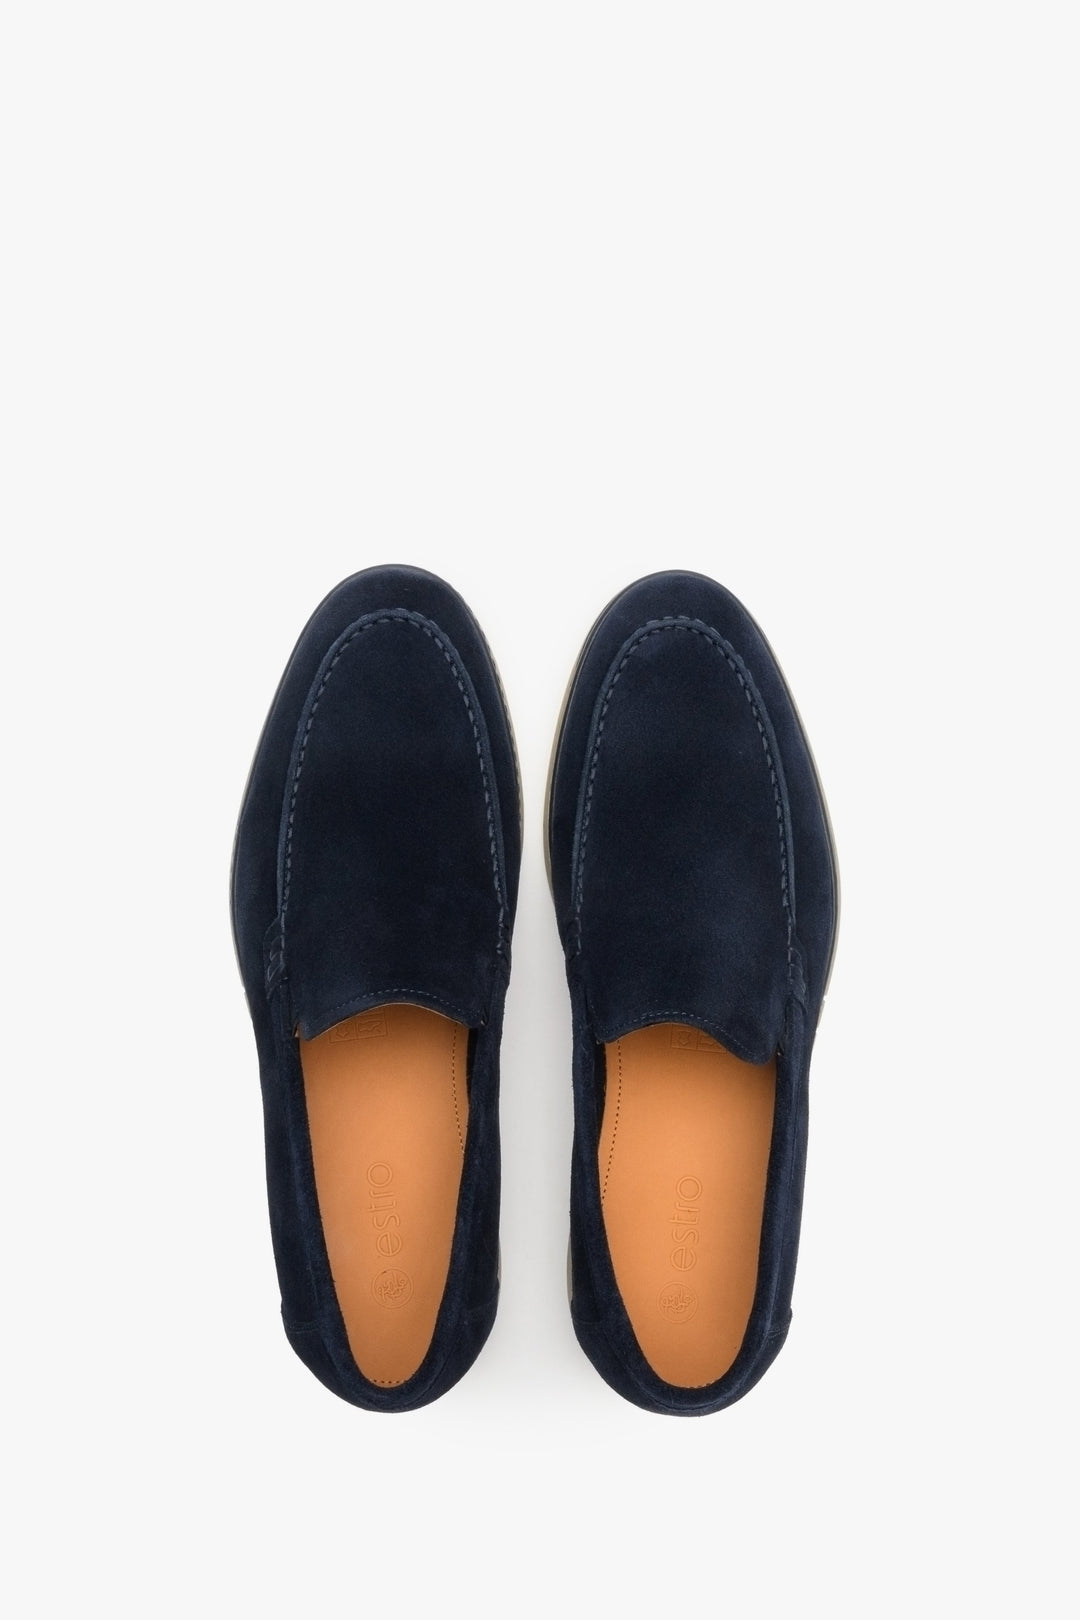 Estro men's navy blue velour loafers - top view shoe presentation.